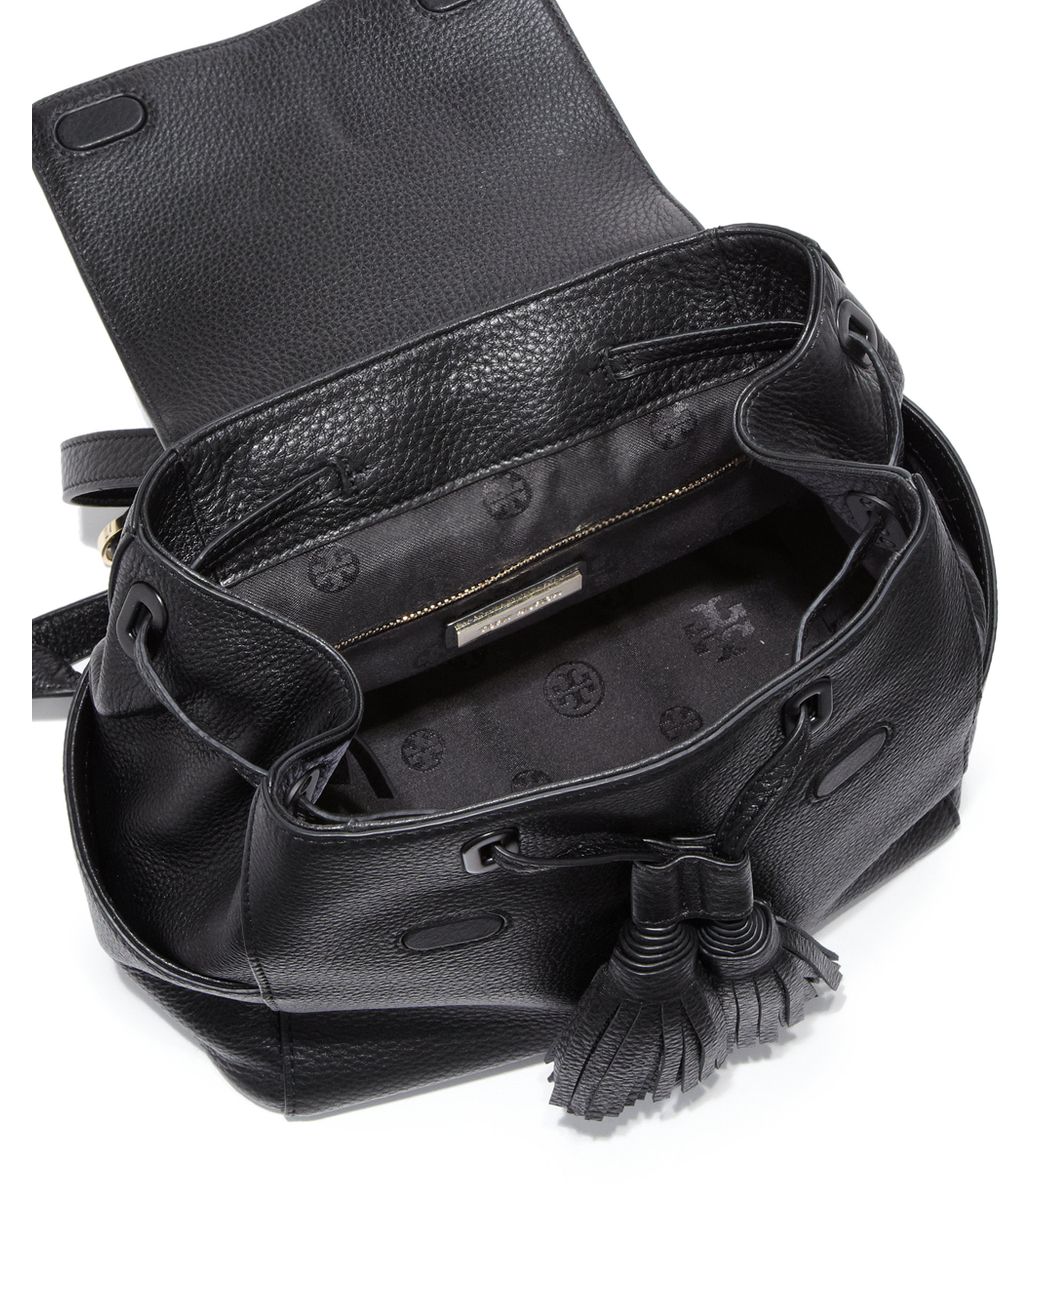 Tory Burch black leather Thea mini backpack – My Girlfriend's Wardrobe LLC